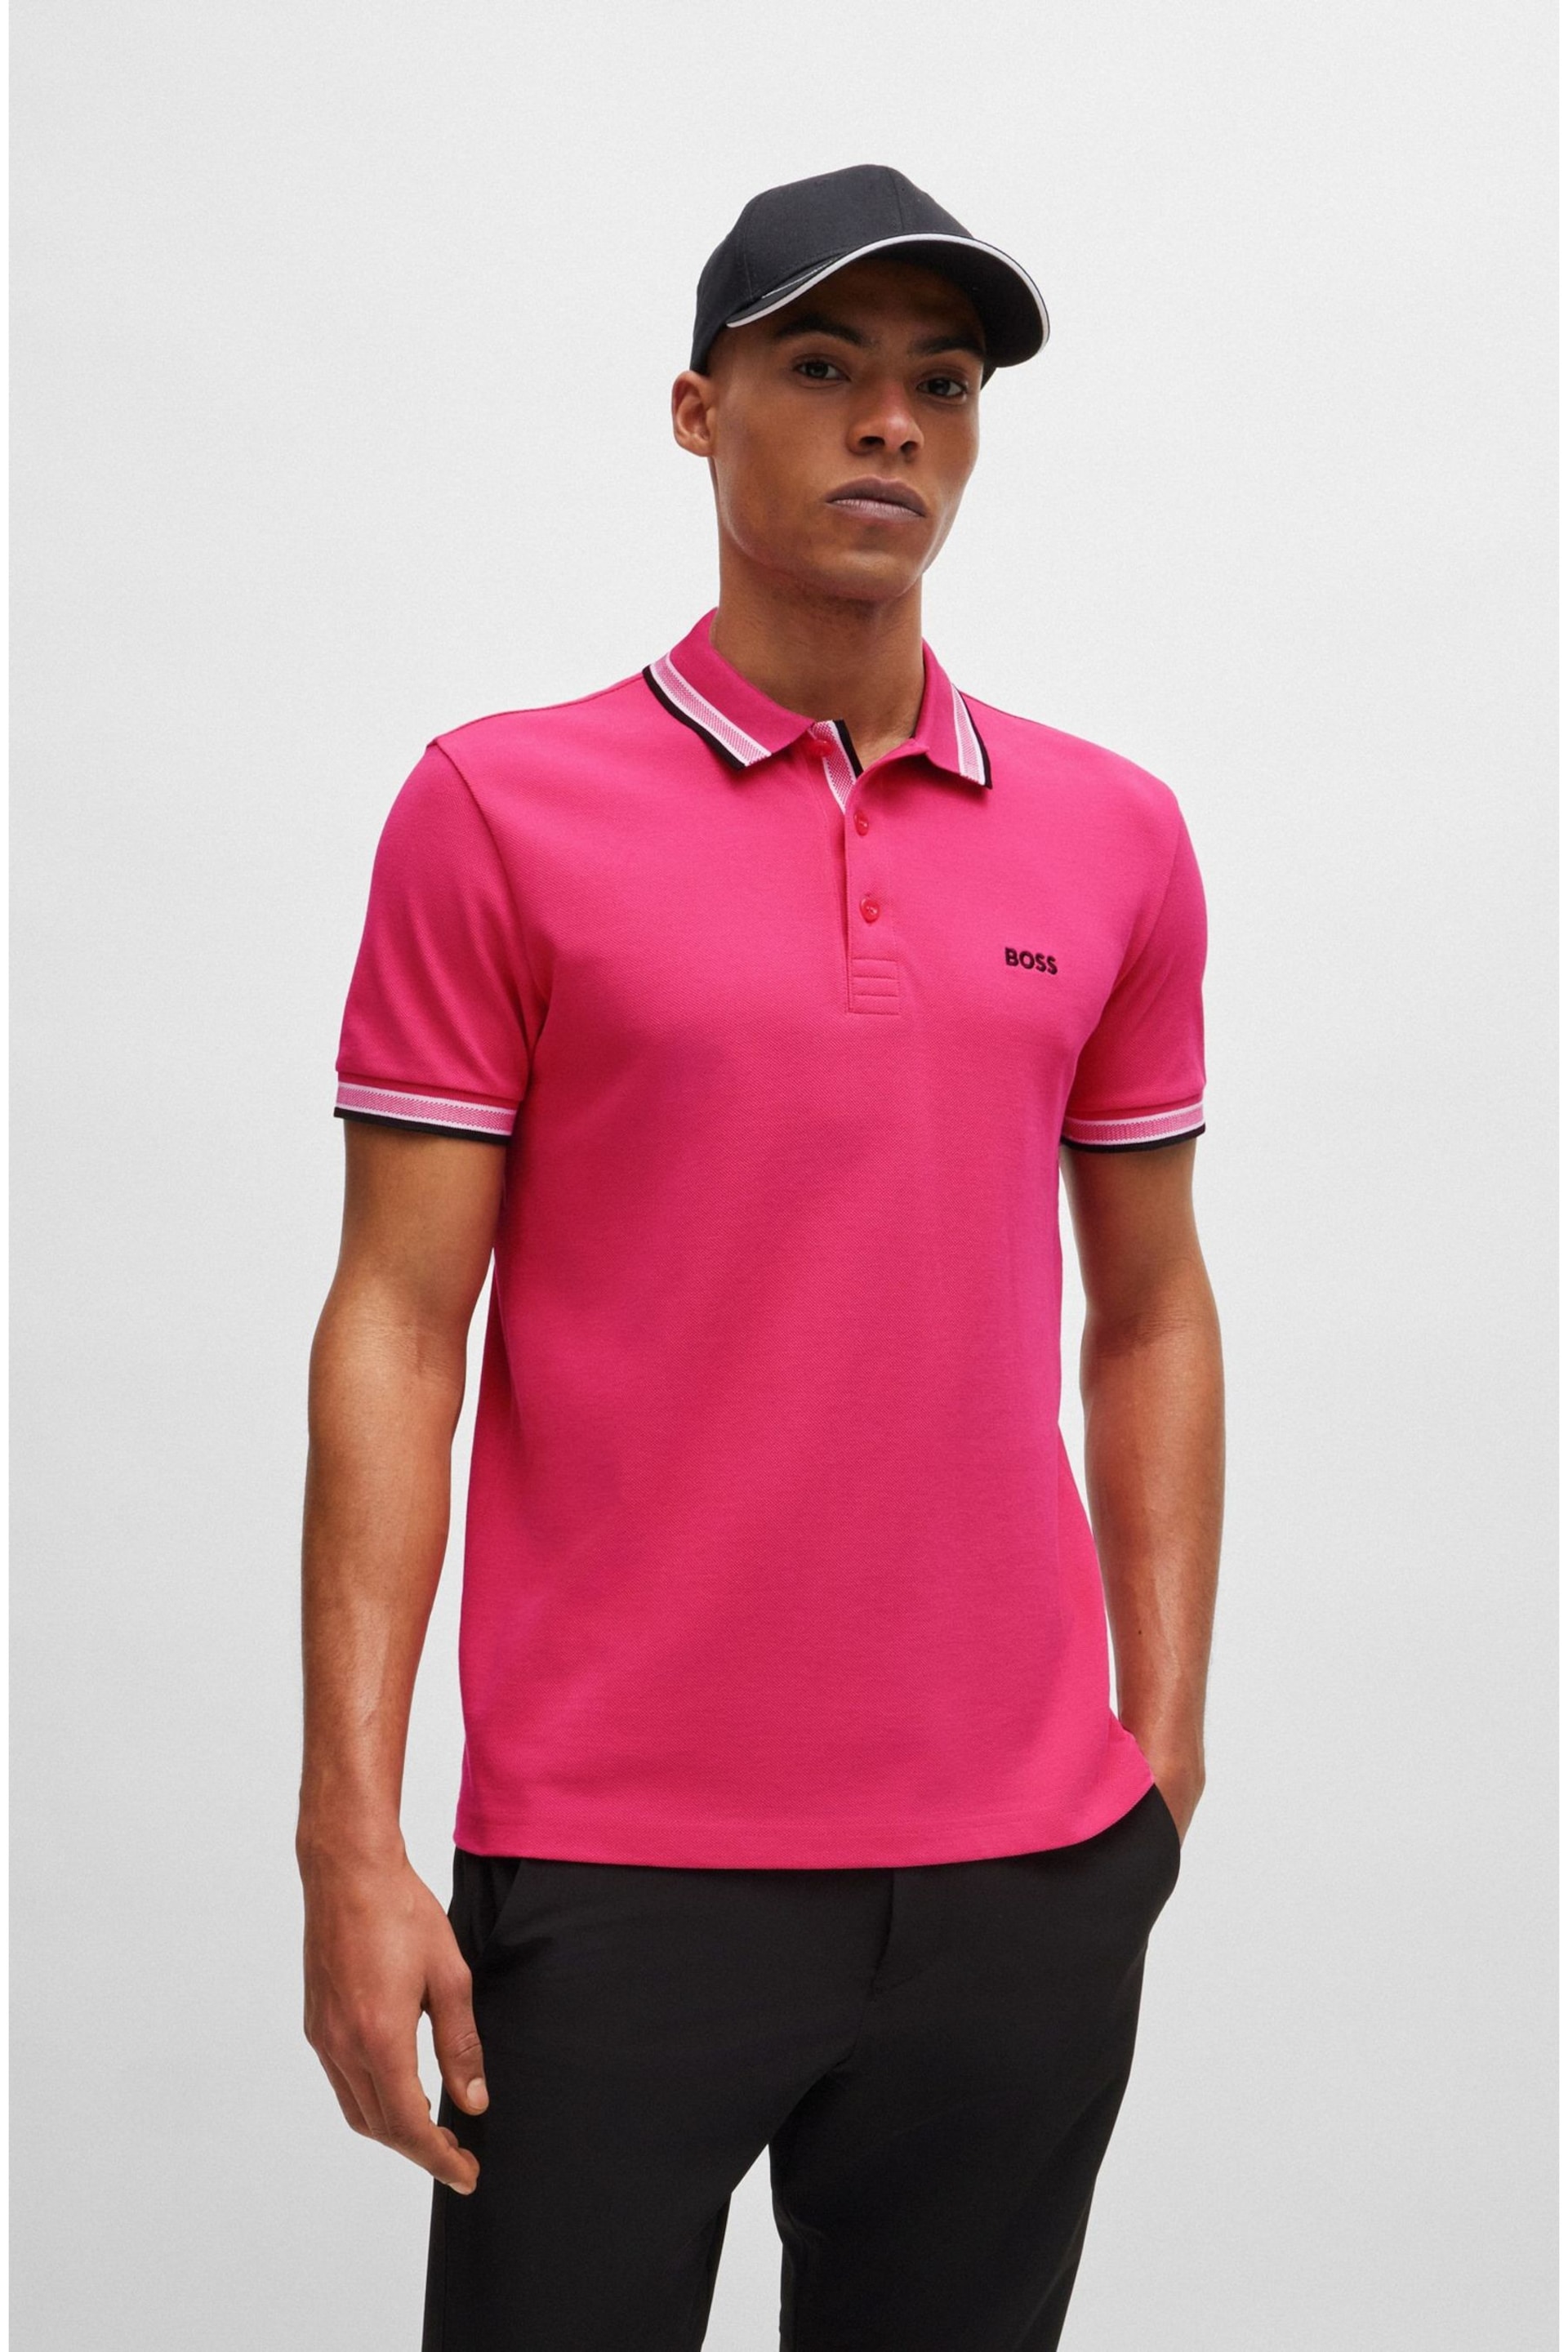 BOSS Light Pink Paddy Polo Shirt - Image 3 of 5